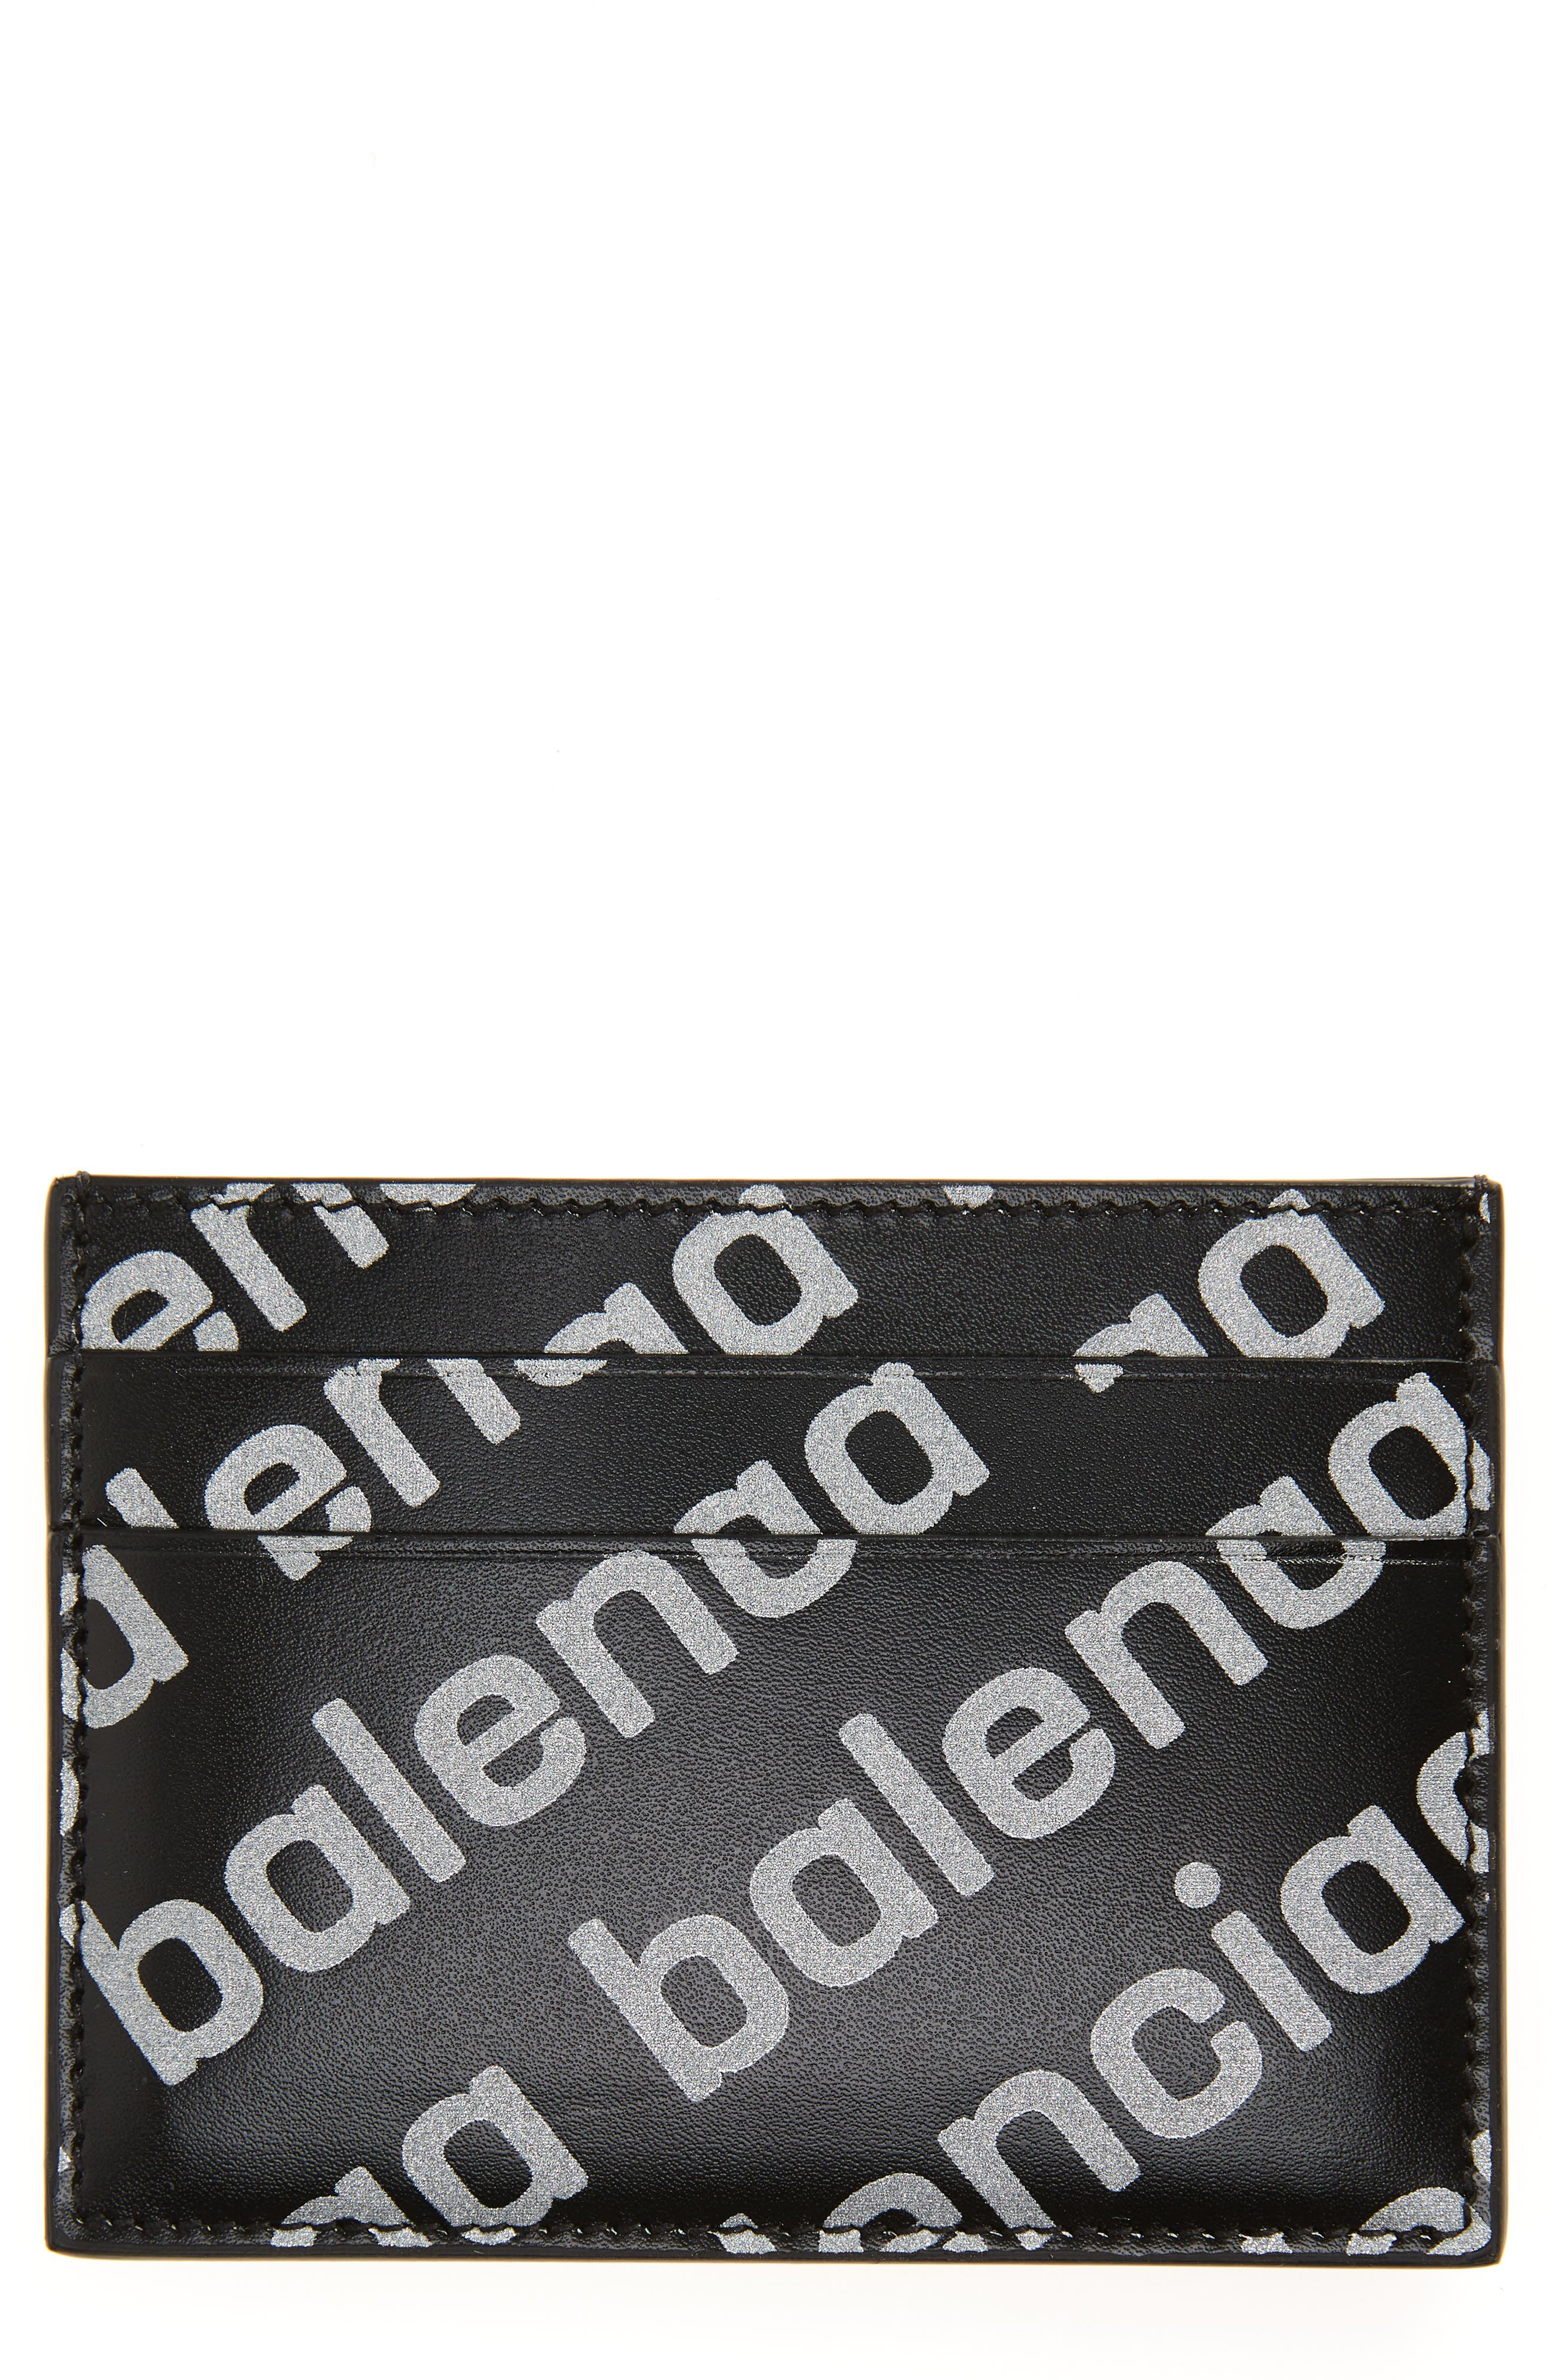 Balenciaga Reflective Diagonal Logo Card Case in Black/Reflective at Nordstrom